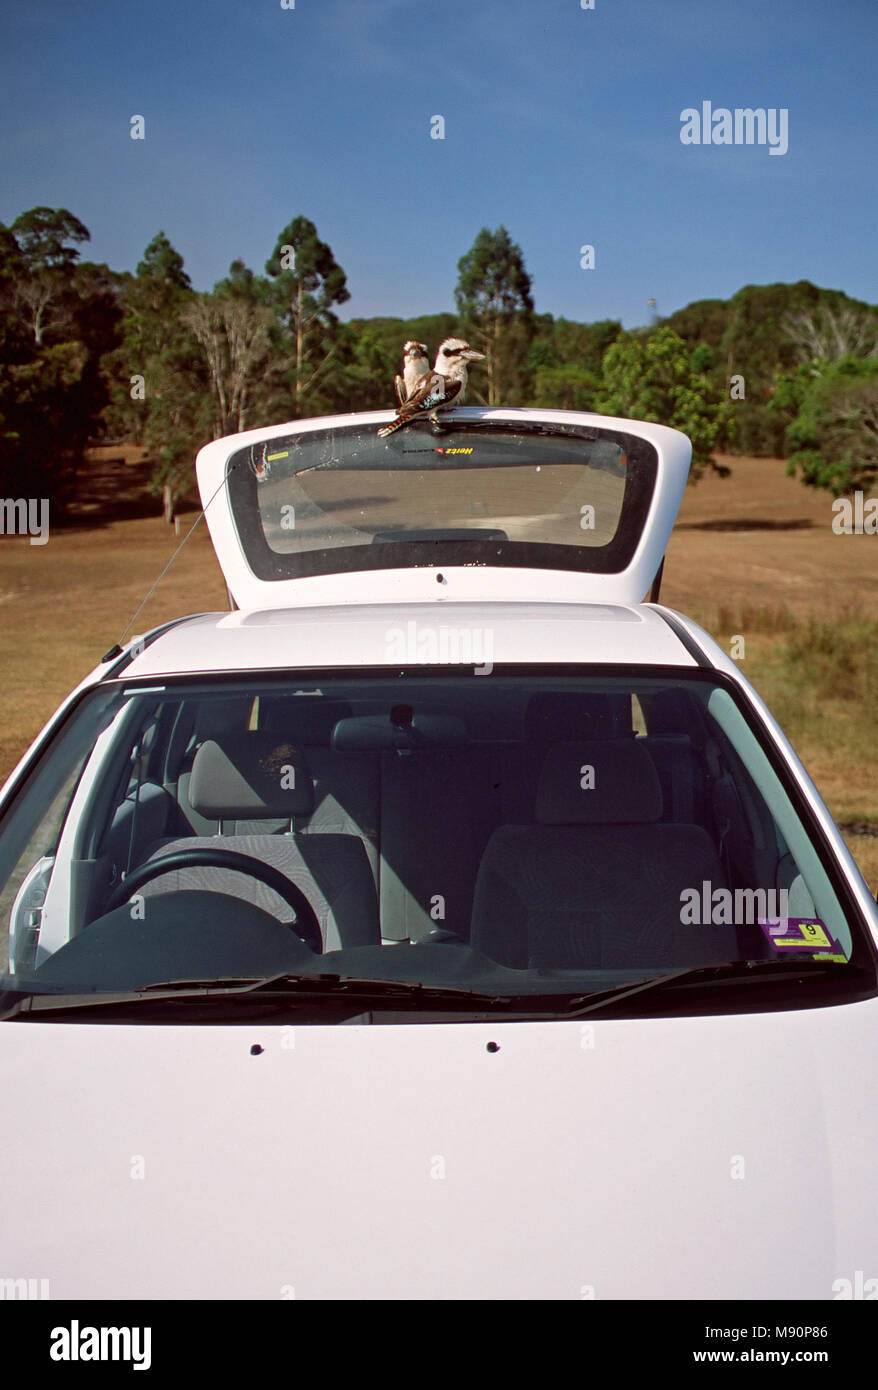 Kookaburra twee vogels zittend op auto Australie Kookaburra riant, assis sur deux oiseaux Australie voiture Banque D'Images